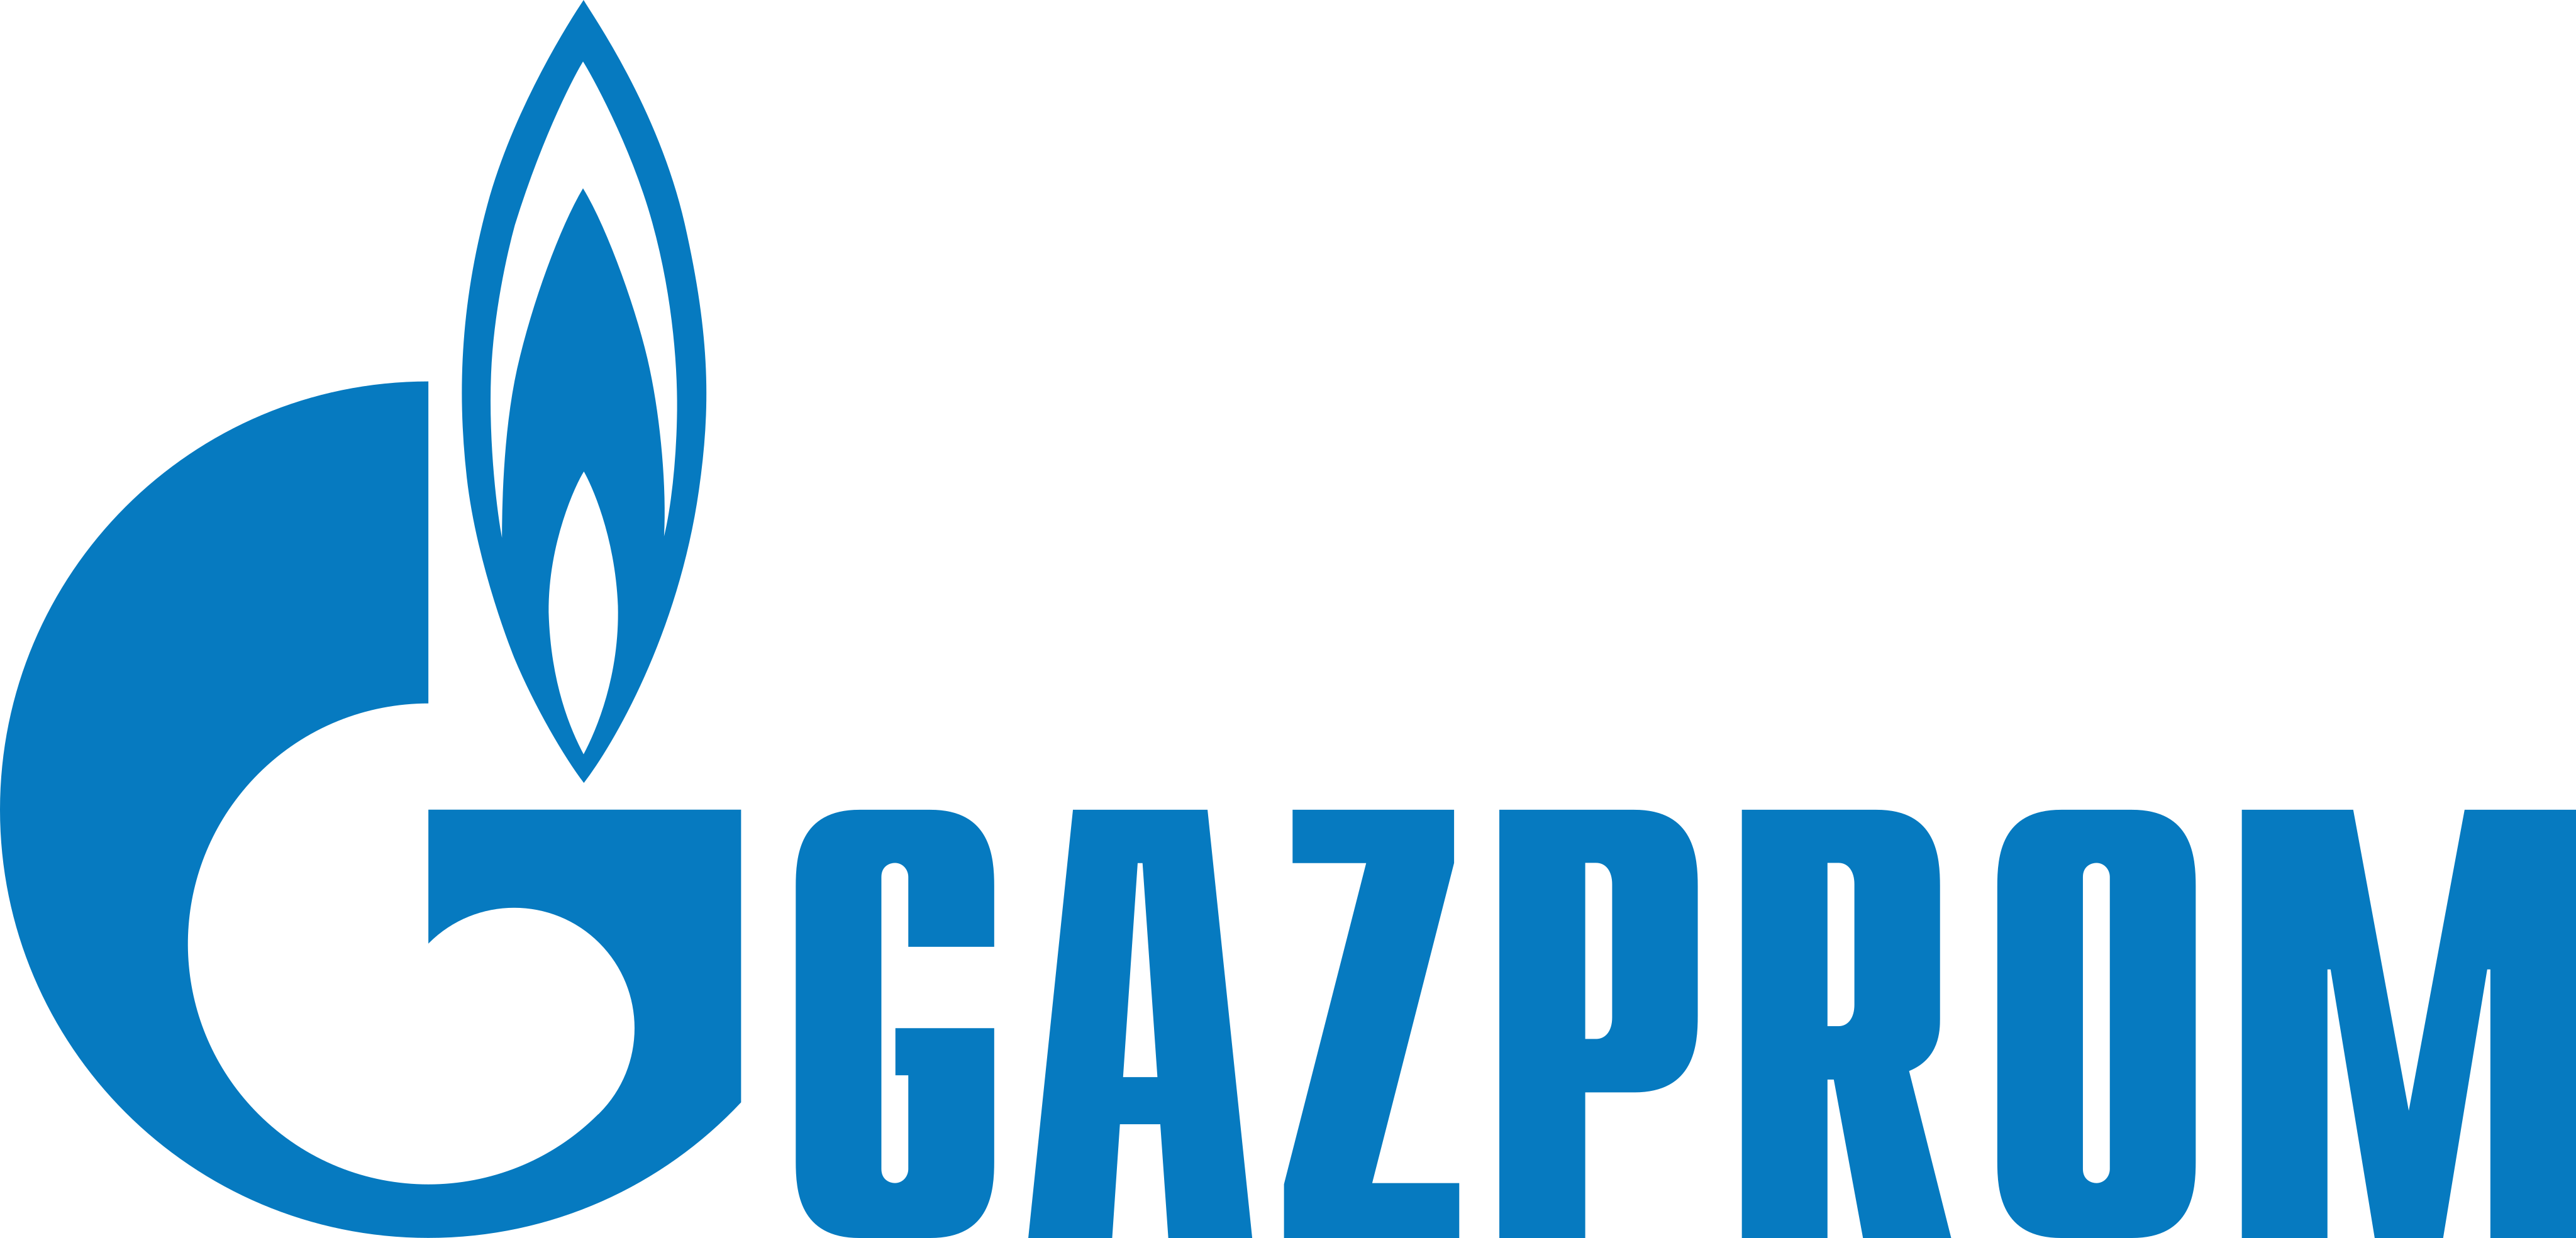 gazprom logo - Gazprom Logo